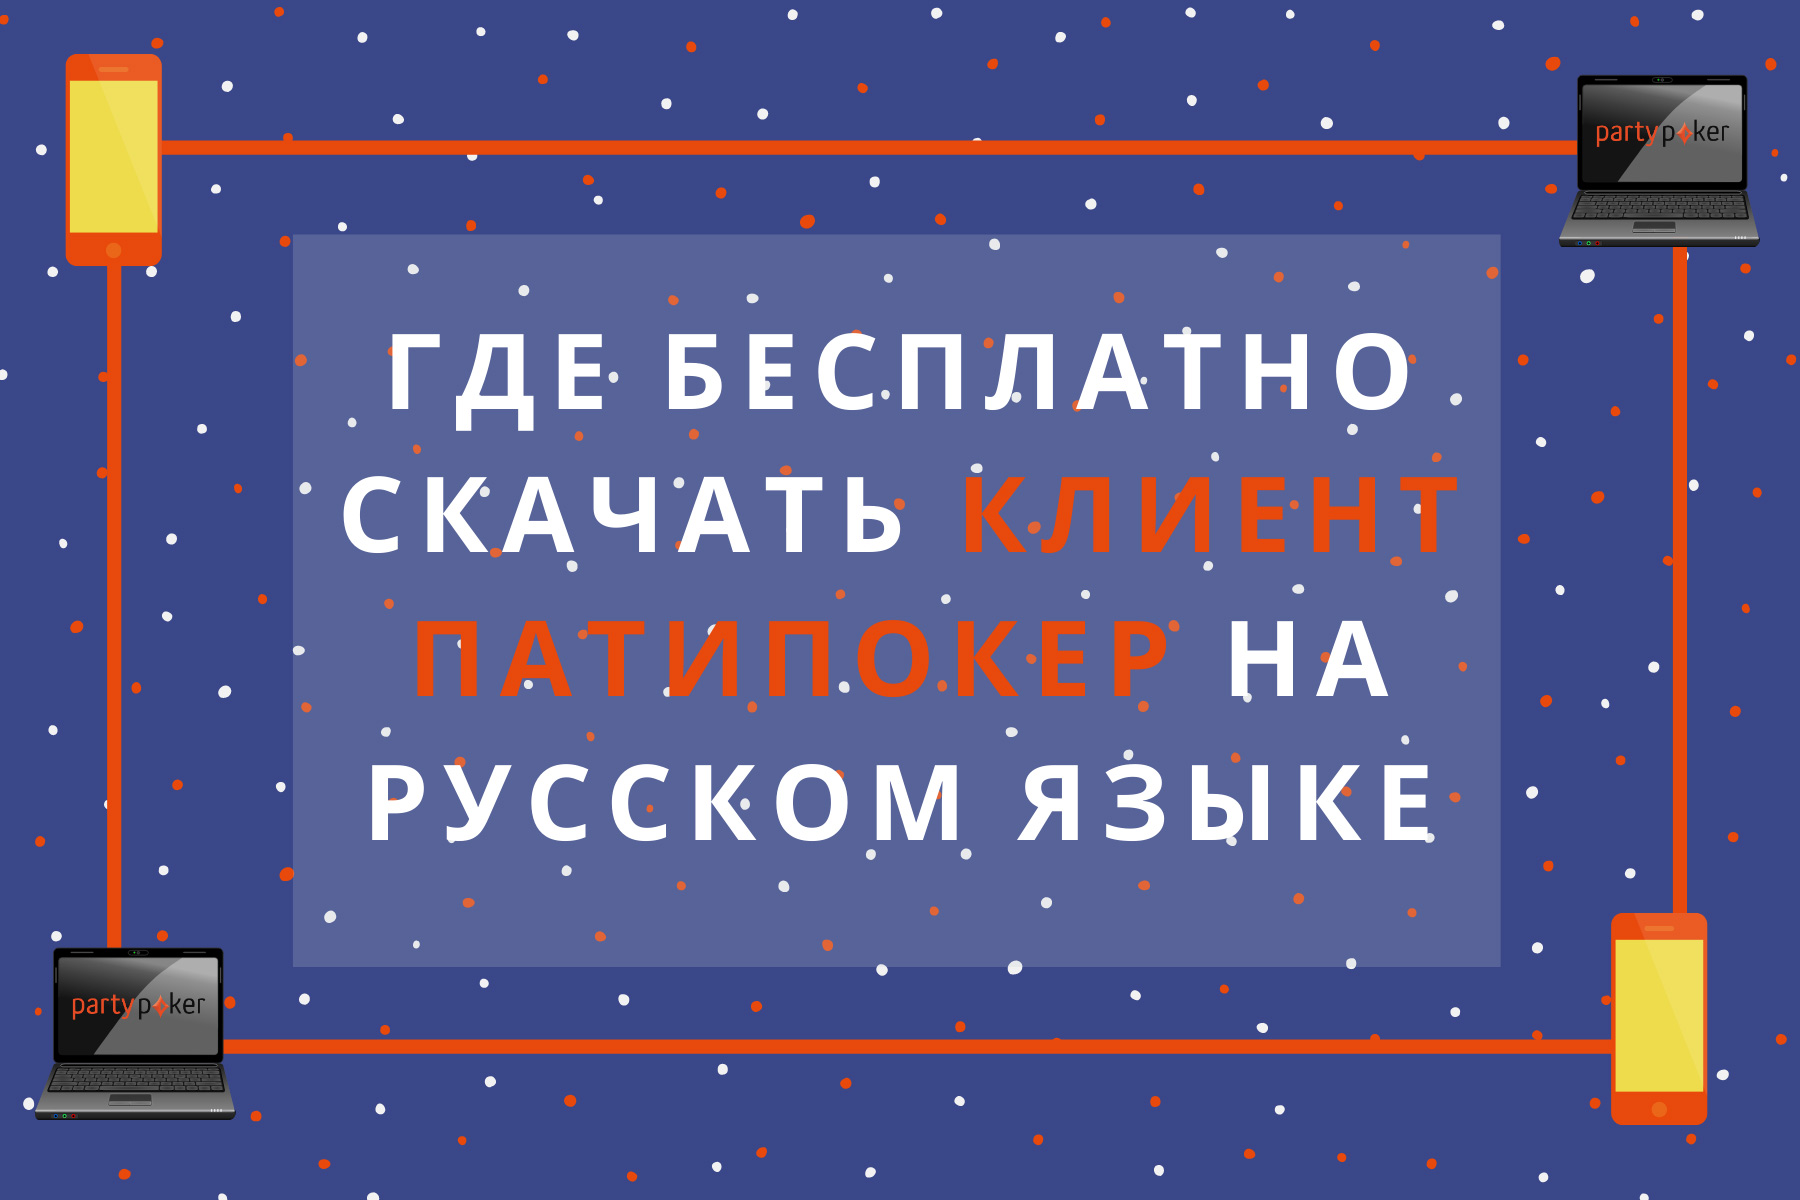 Как скачать клиент для ПК и мобильного от partypoker на русском языке.